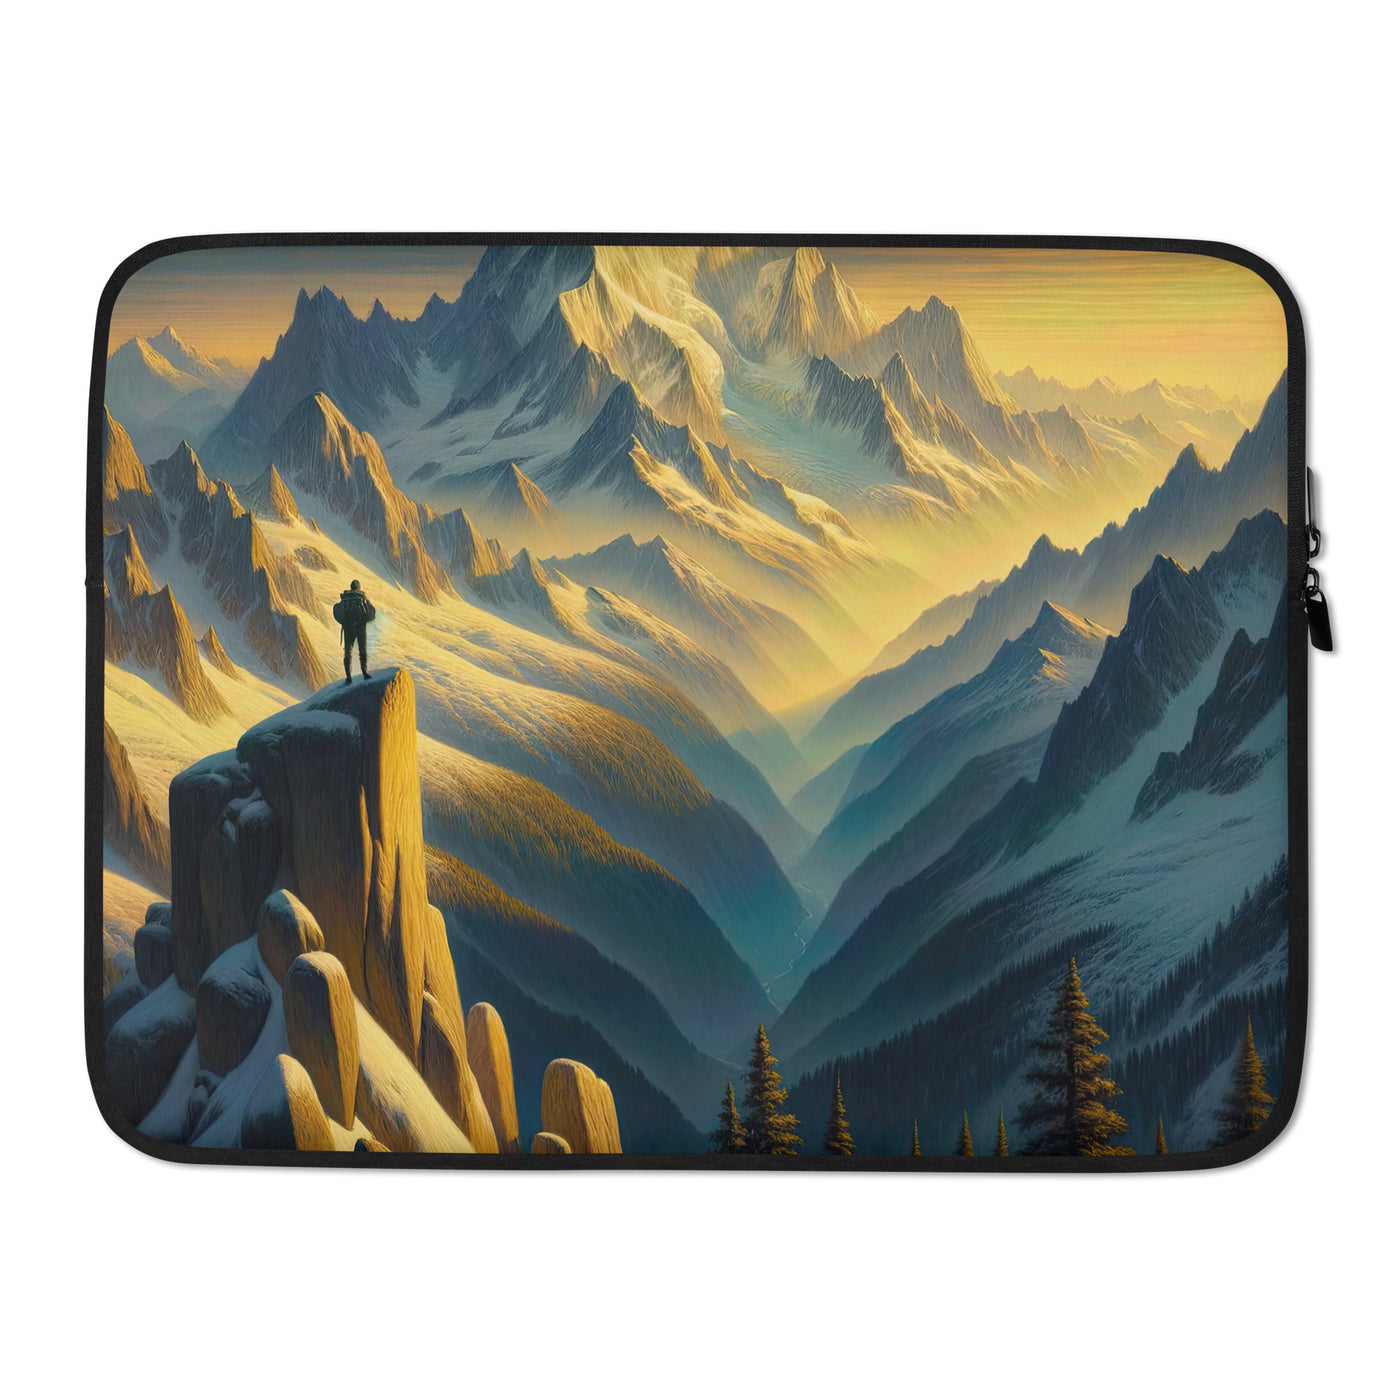 Ölgemälde eines Wanderers bei Morgendämmerung auf Alpengipfeln mit goldenem Sonnenlicht - Laptophülle wandern xxx yyy zzz 15″